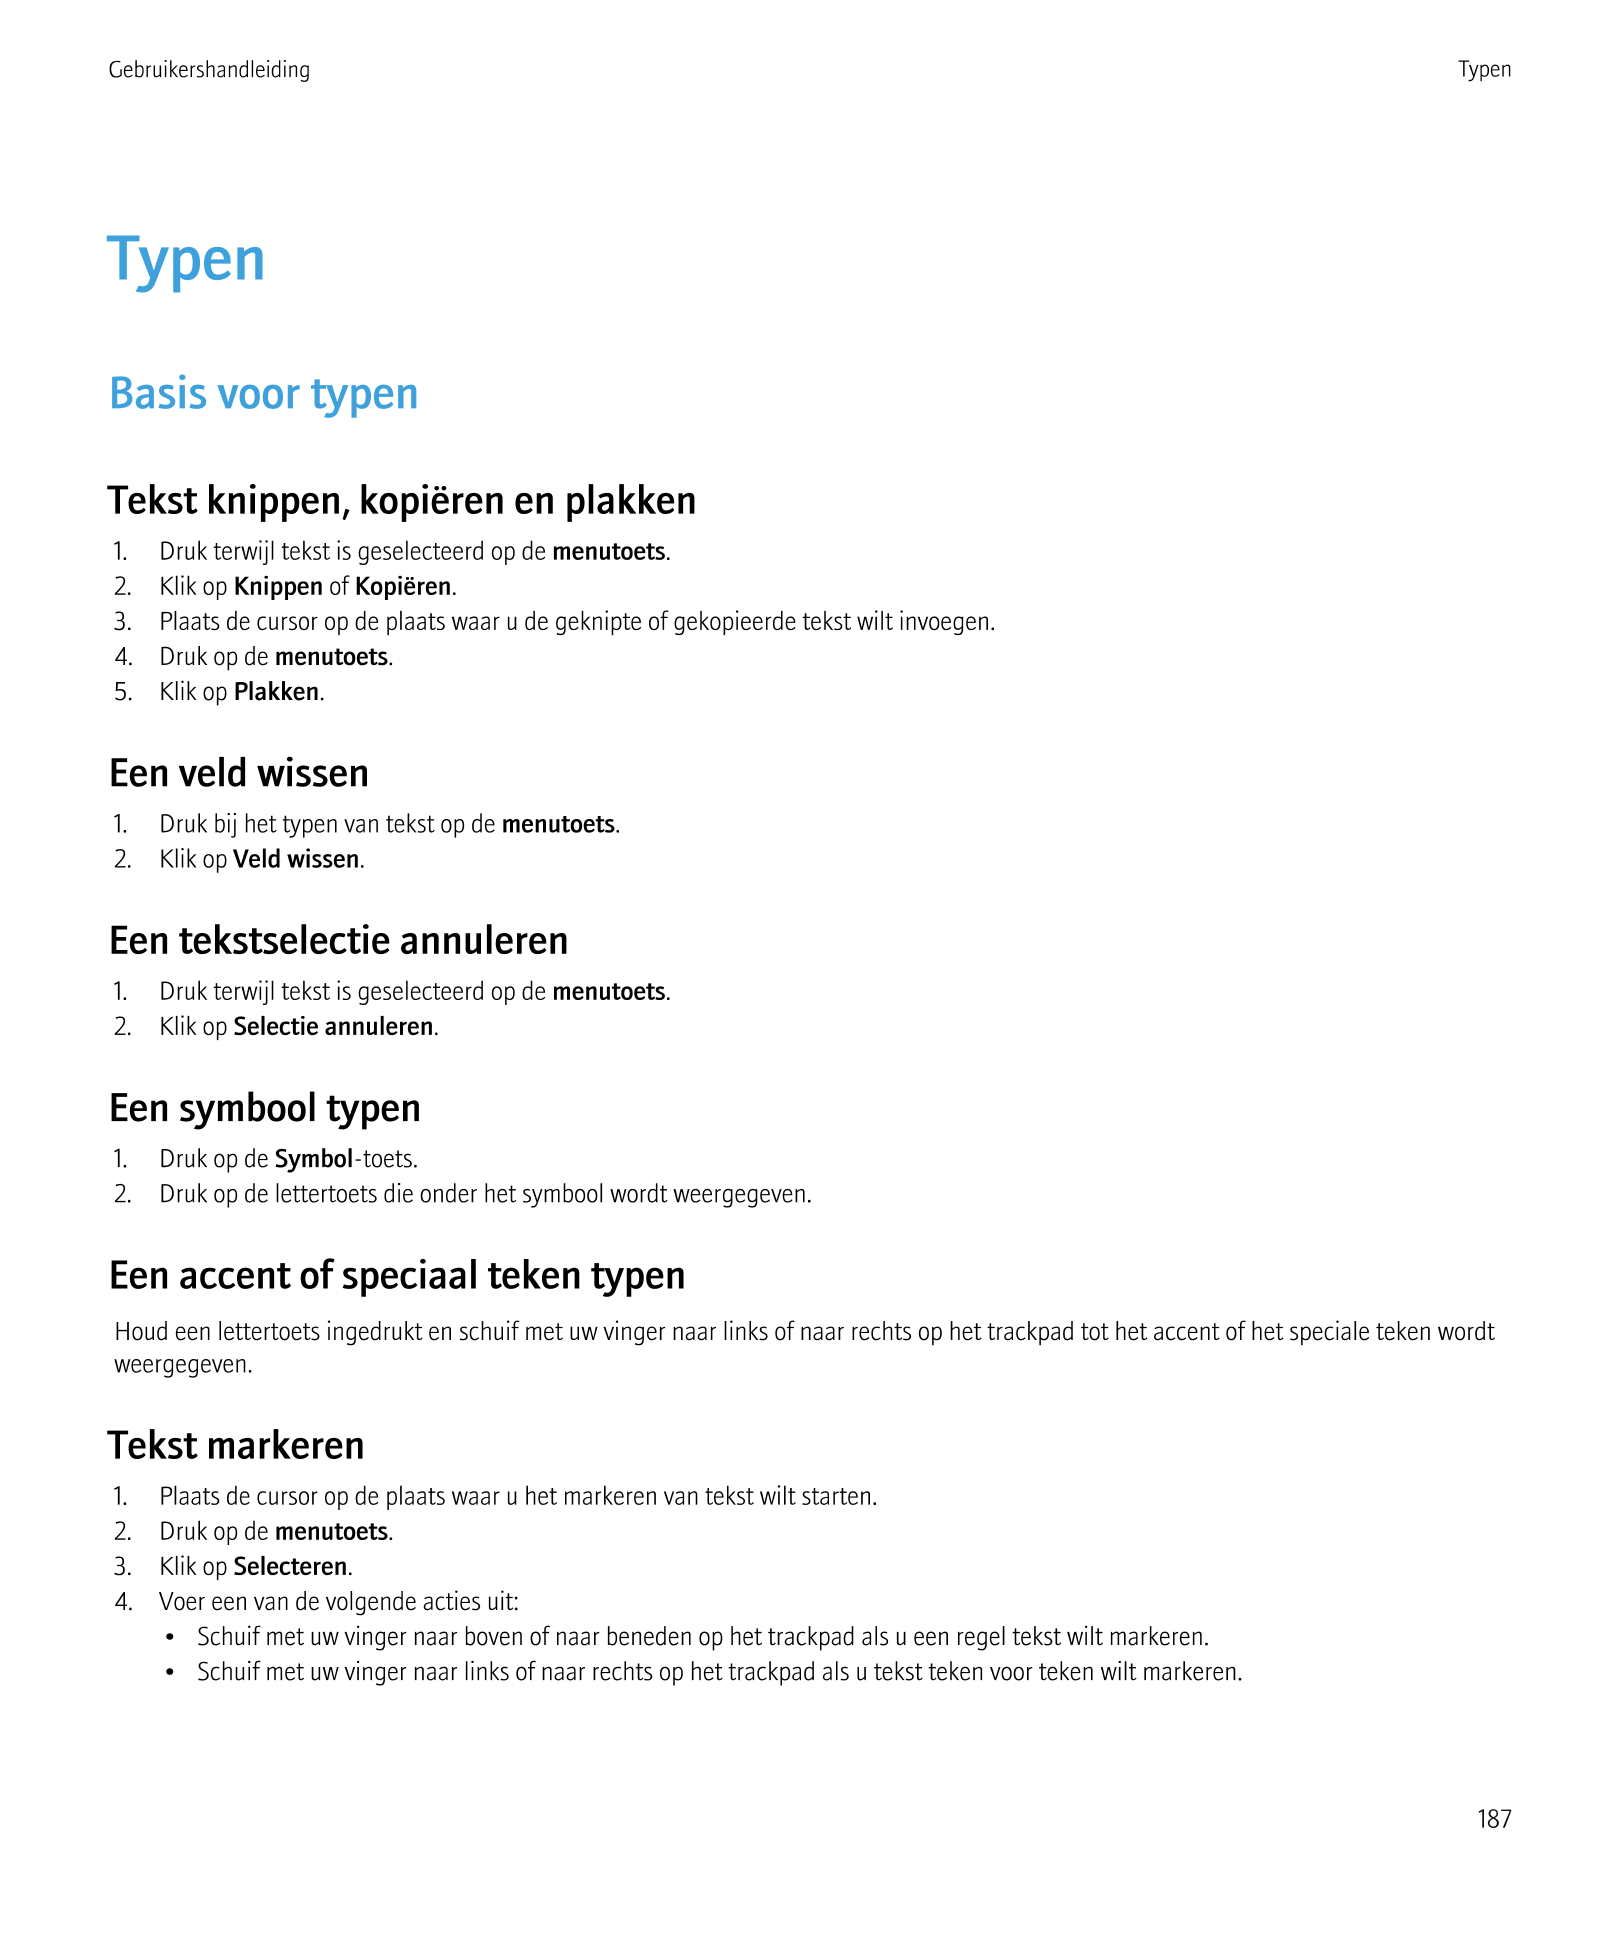 Gebruikershandleiding Typen
Typen
Basis voor typen
Tekst knippen, kopiëren en plakken
1.     Druk terwijl tekst is geselecteerd 